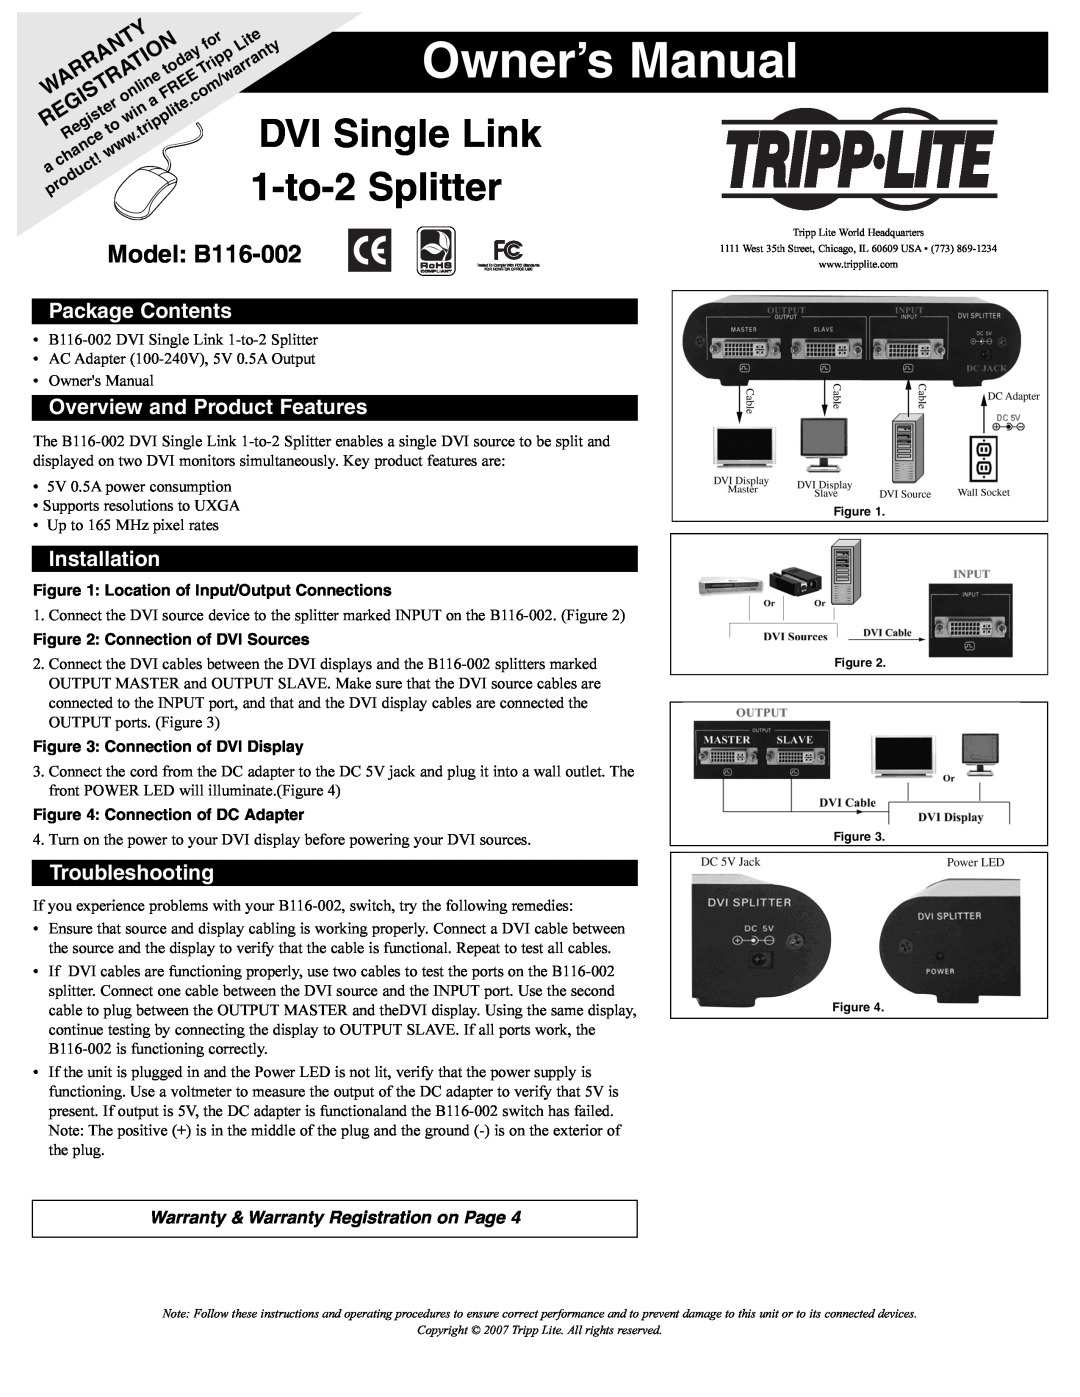 Tripp Lite owner manual DVI Single Link, 1-to-2Splitter, Model: B116-002, Package Contents, Installation, Warranty 